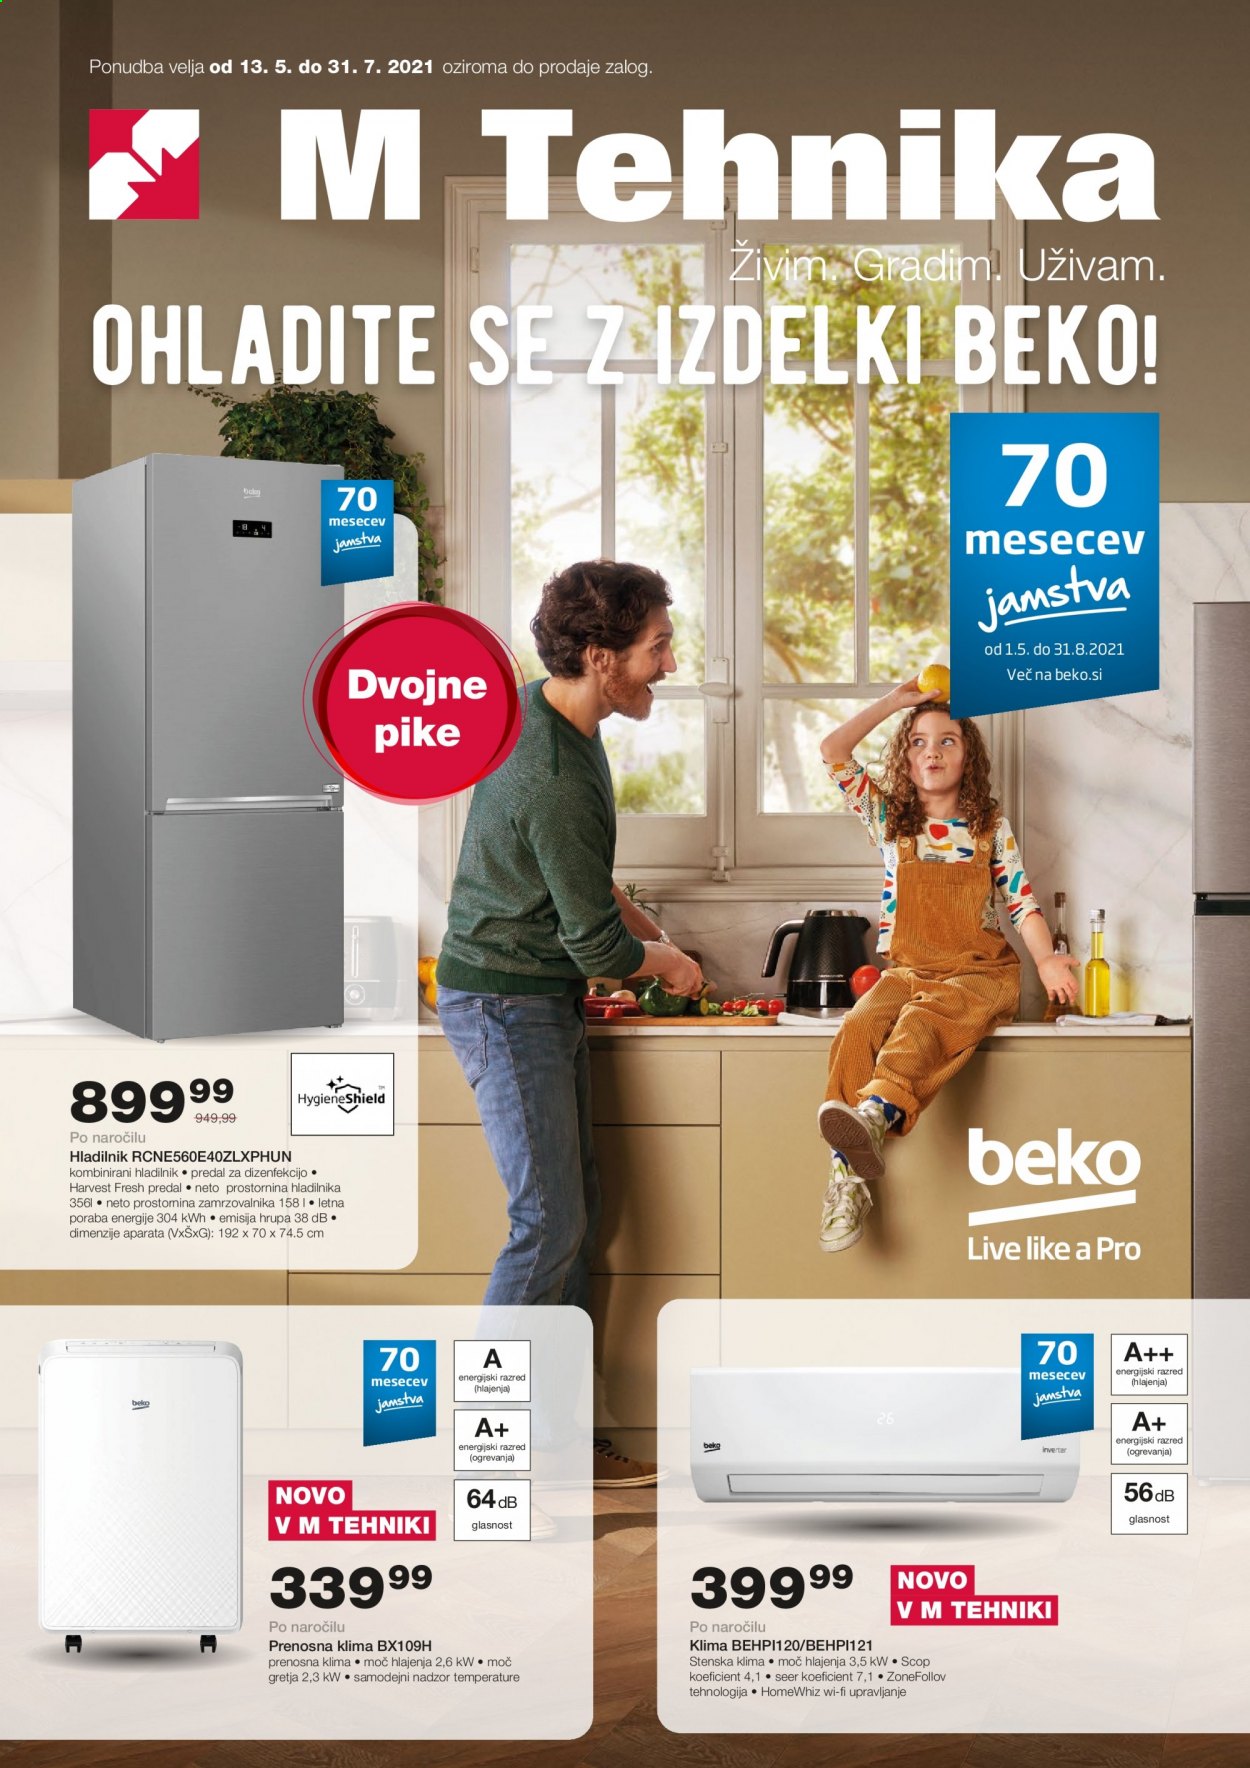 thumbnail - M Tehnika katalog - 13.5.2021 - 31.7.2021 - Ponudba izdelkov - Beko, hladilnik, prenosna klimatska naprava. Stran 1.